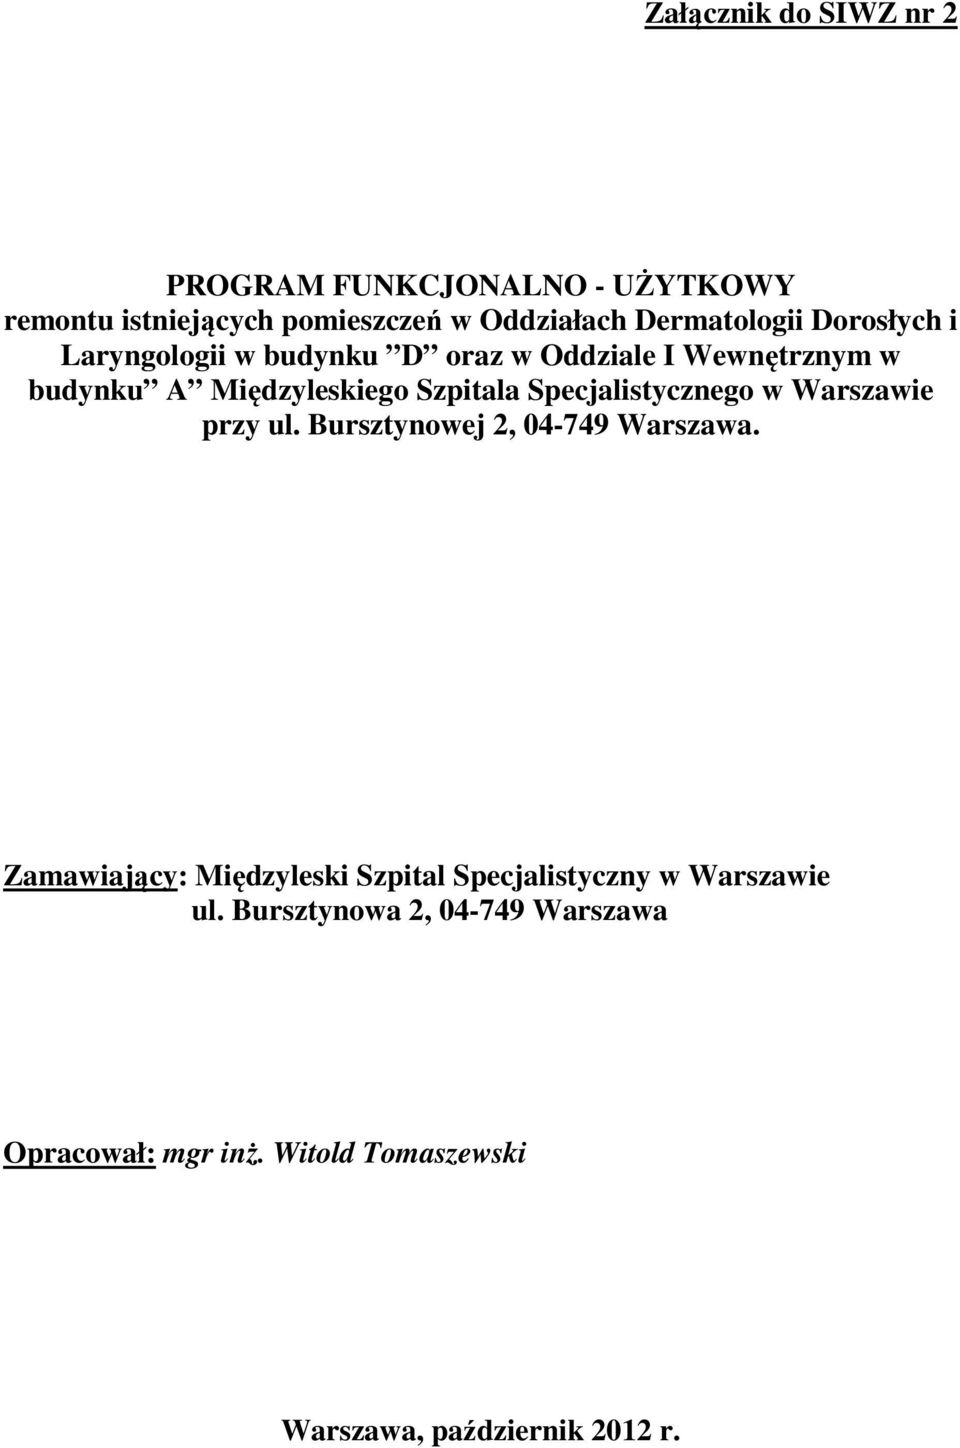 Specjalistycznego w Warszawie przy ul. Bursztynowej 2, 04-749 Warszawa.